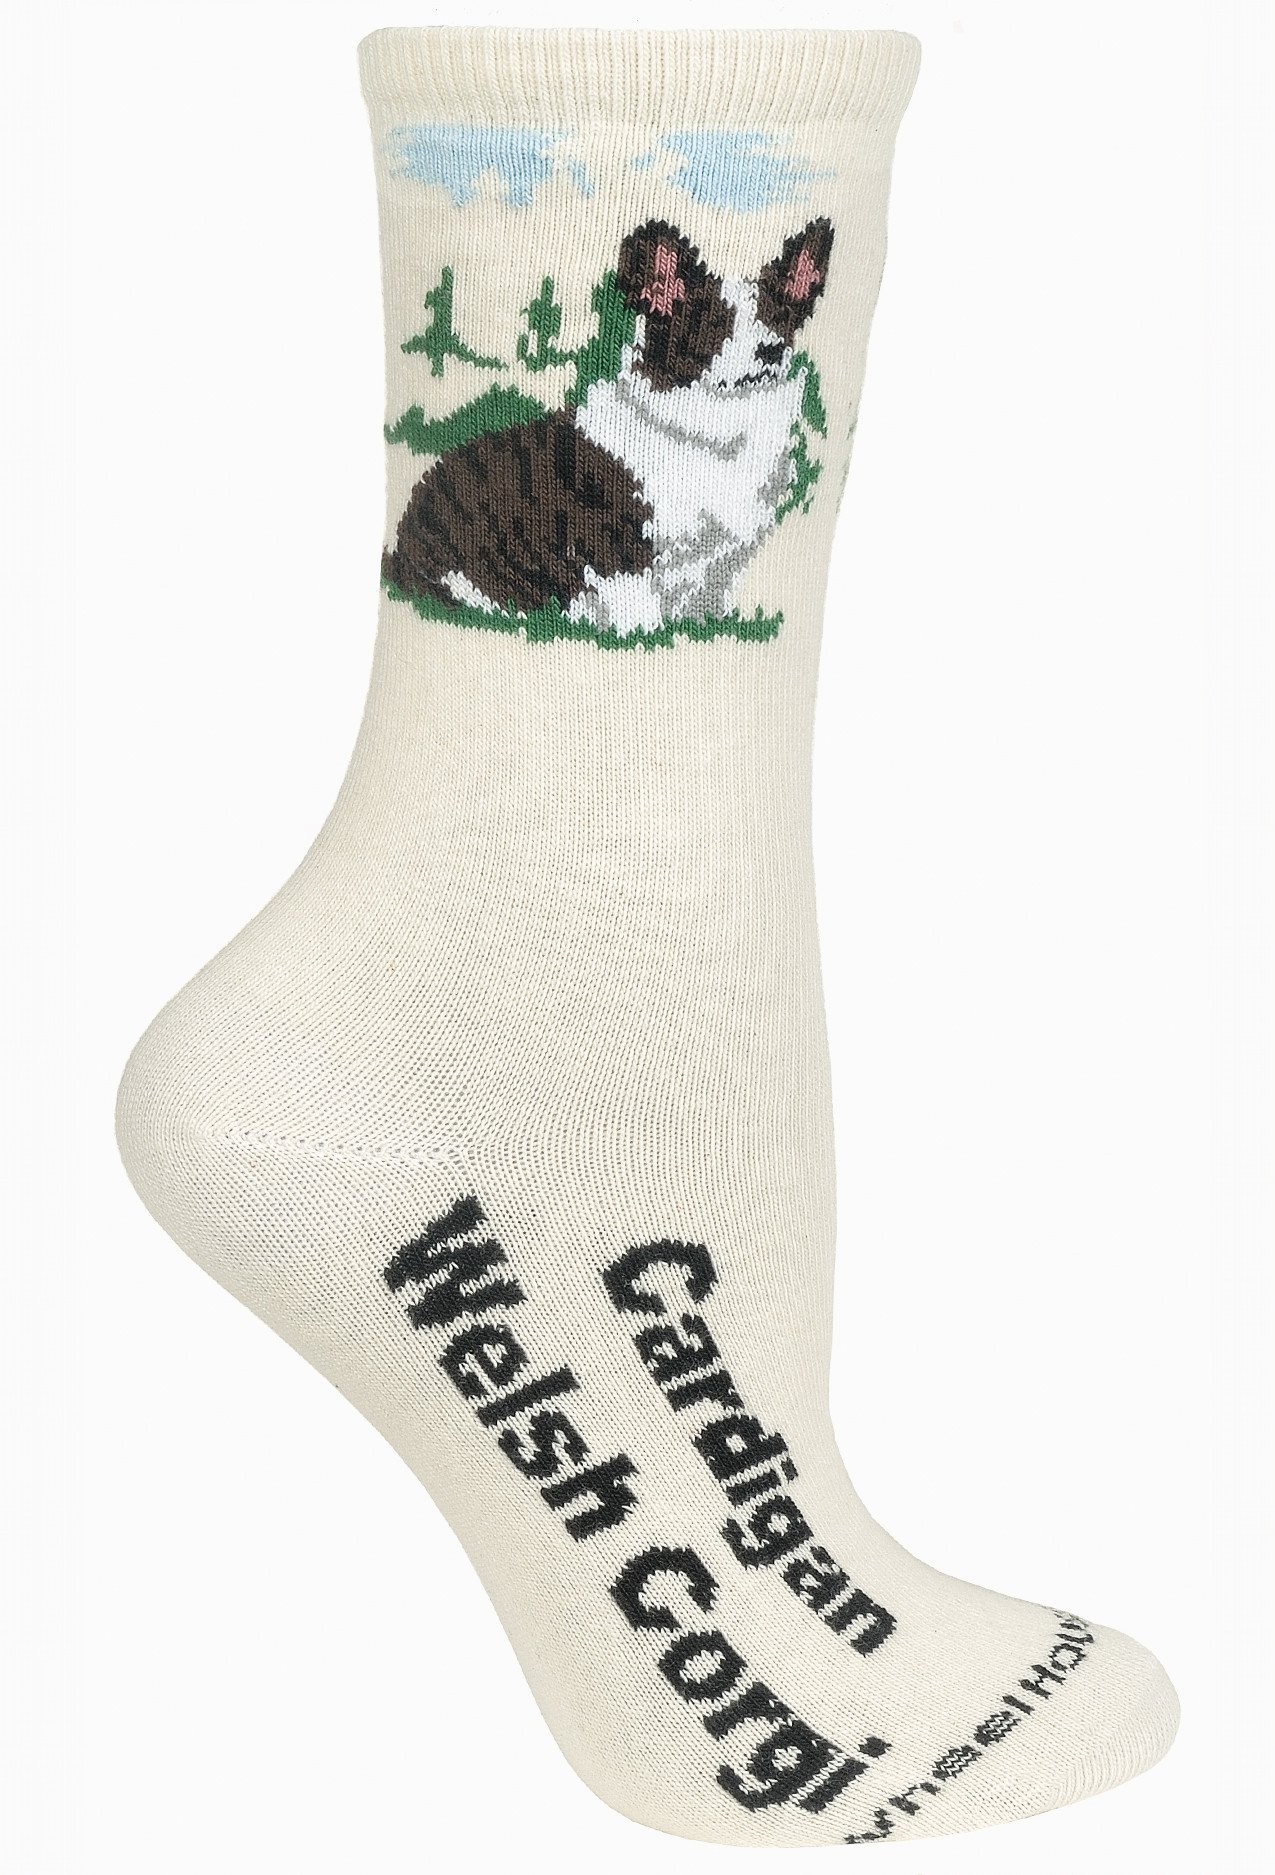 Corgi, Welsh Cardigan Sock on Natural Size 9-11